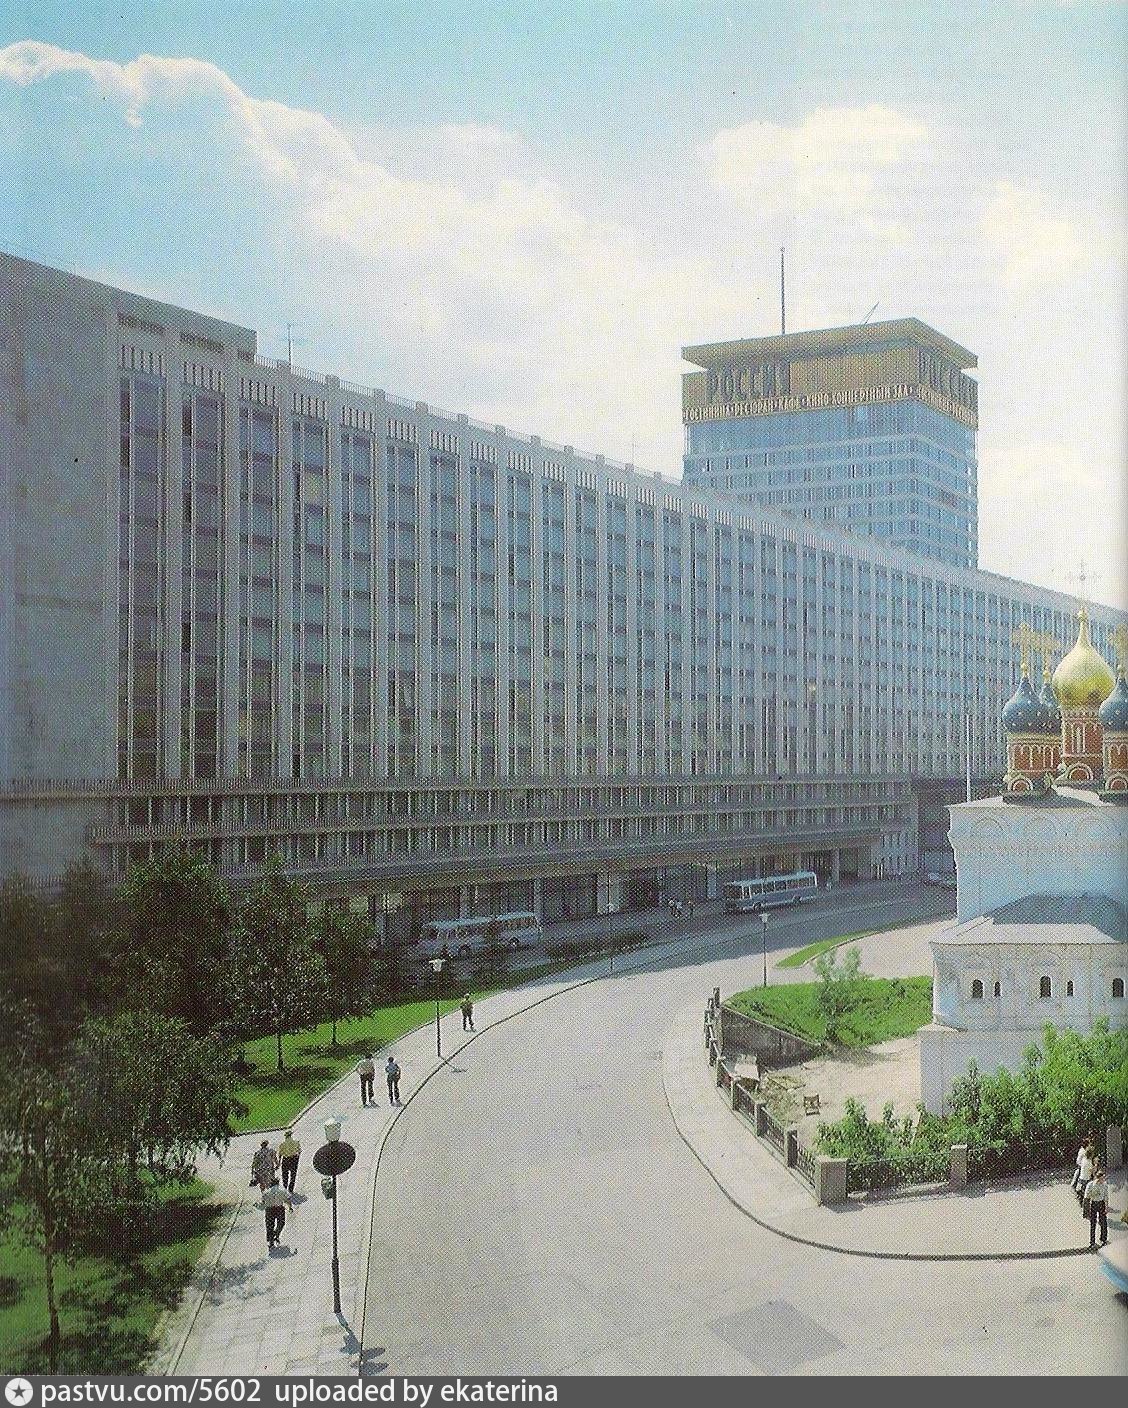 гостиницы россия в москве